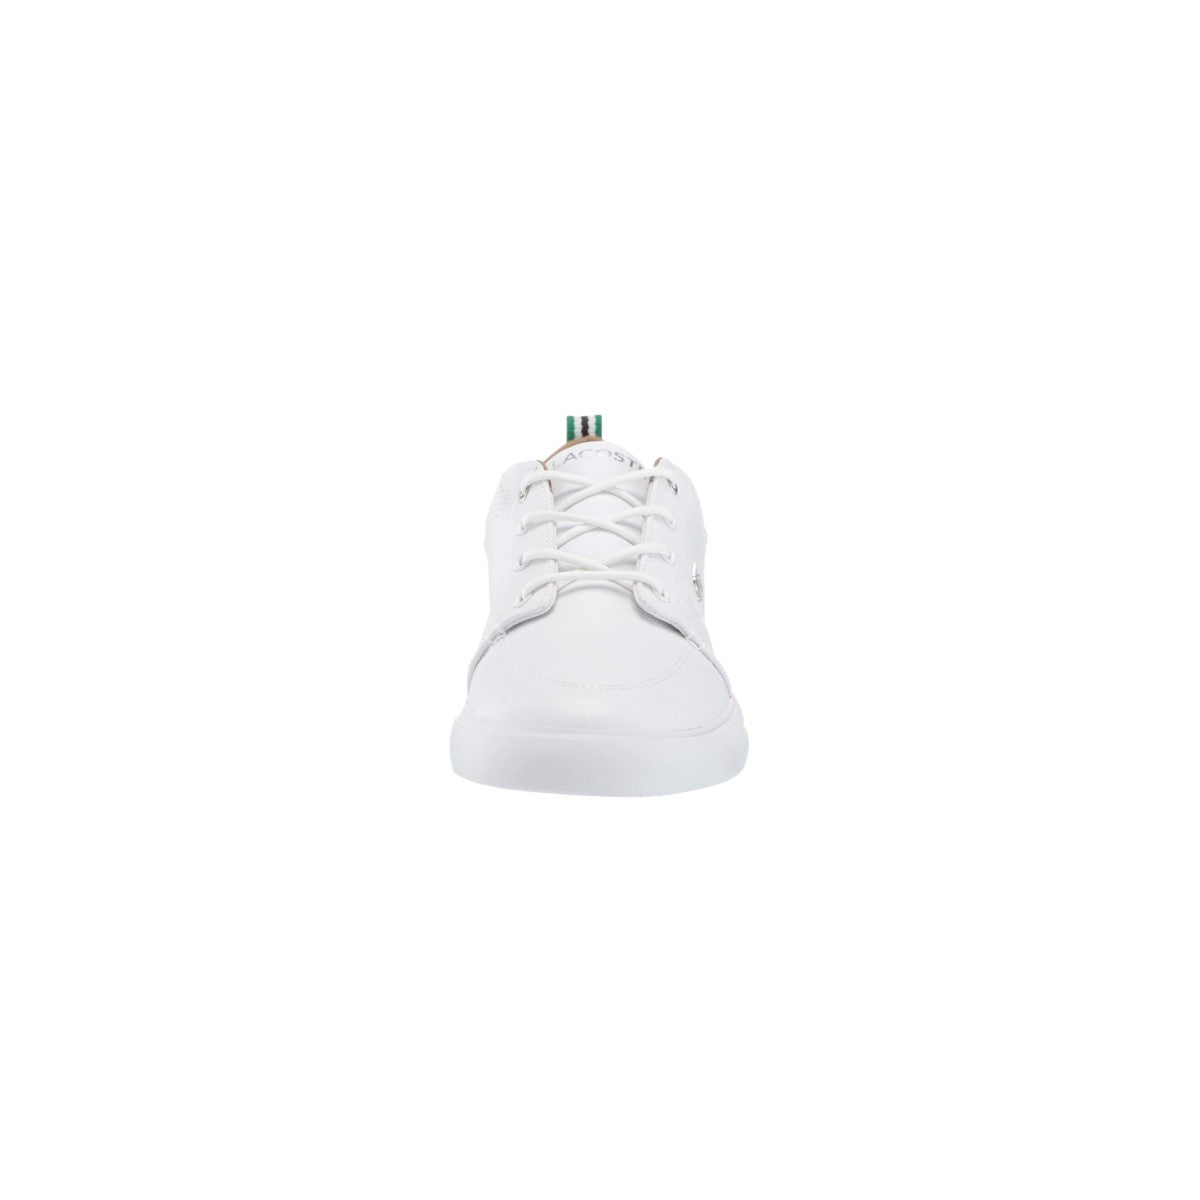 LACOSTE 7-37CMA007321G BAYLISS 119 1 MN'S (Medium) White/White Leather & Synthetic Lifestyle Shoes